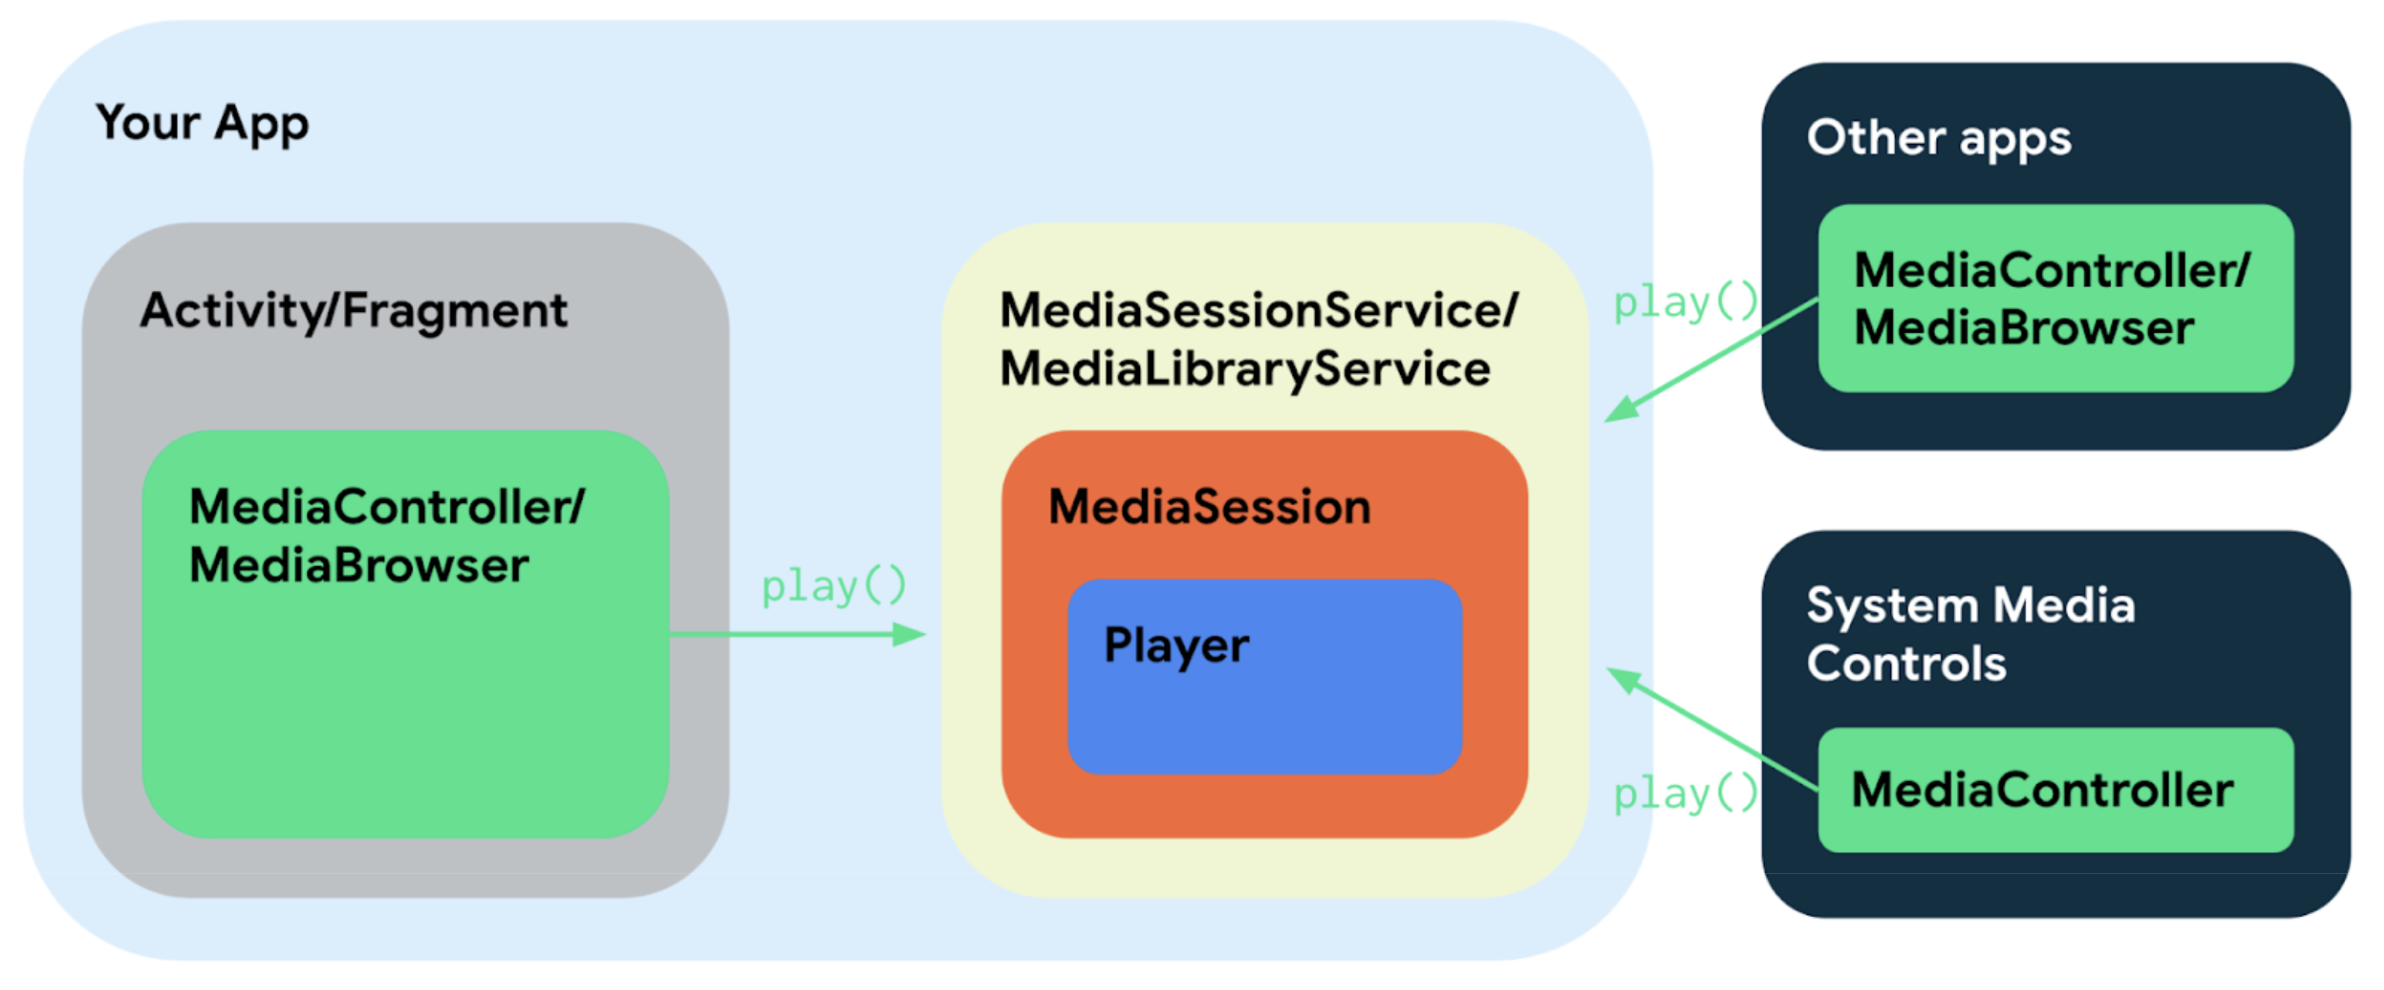 Diagrama de componentes de la app con el servicio, la actividad y las apps externas.